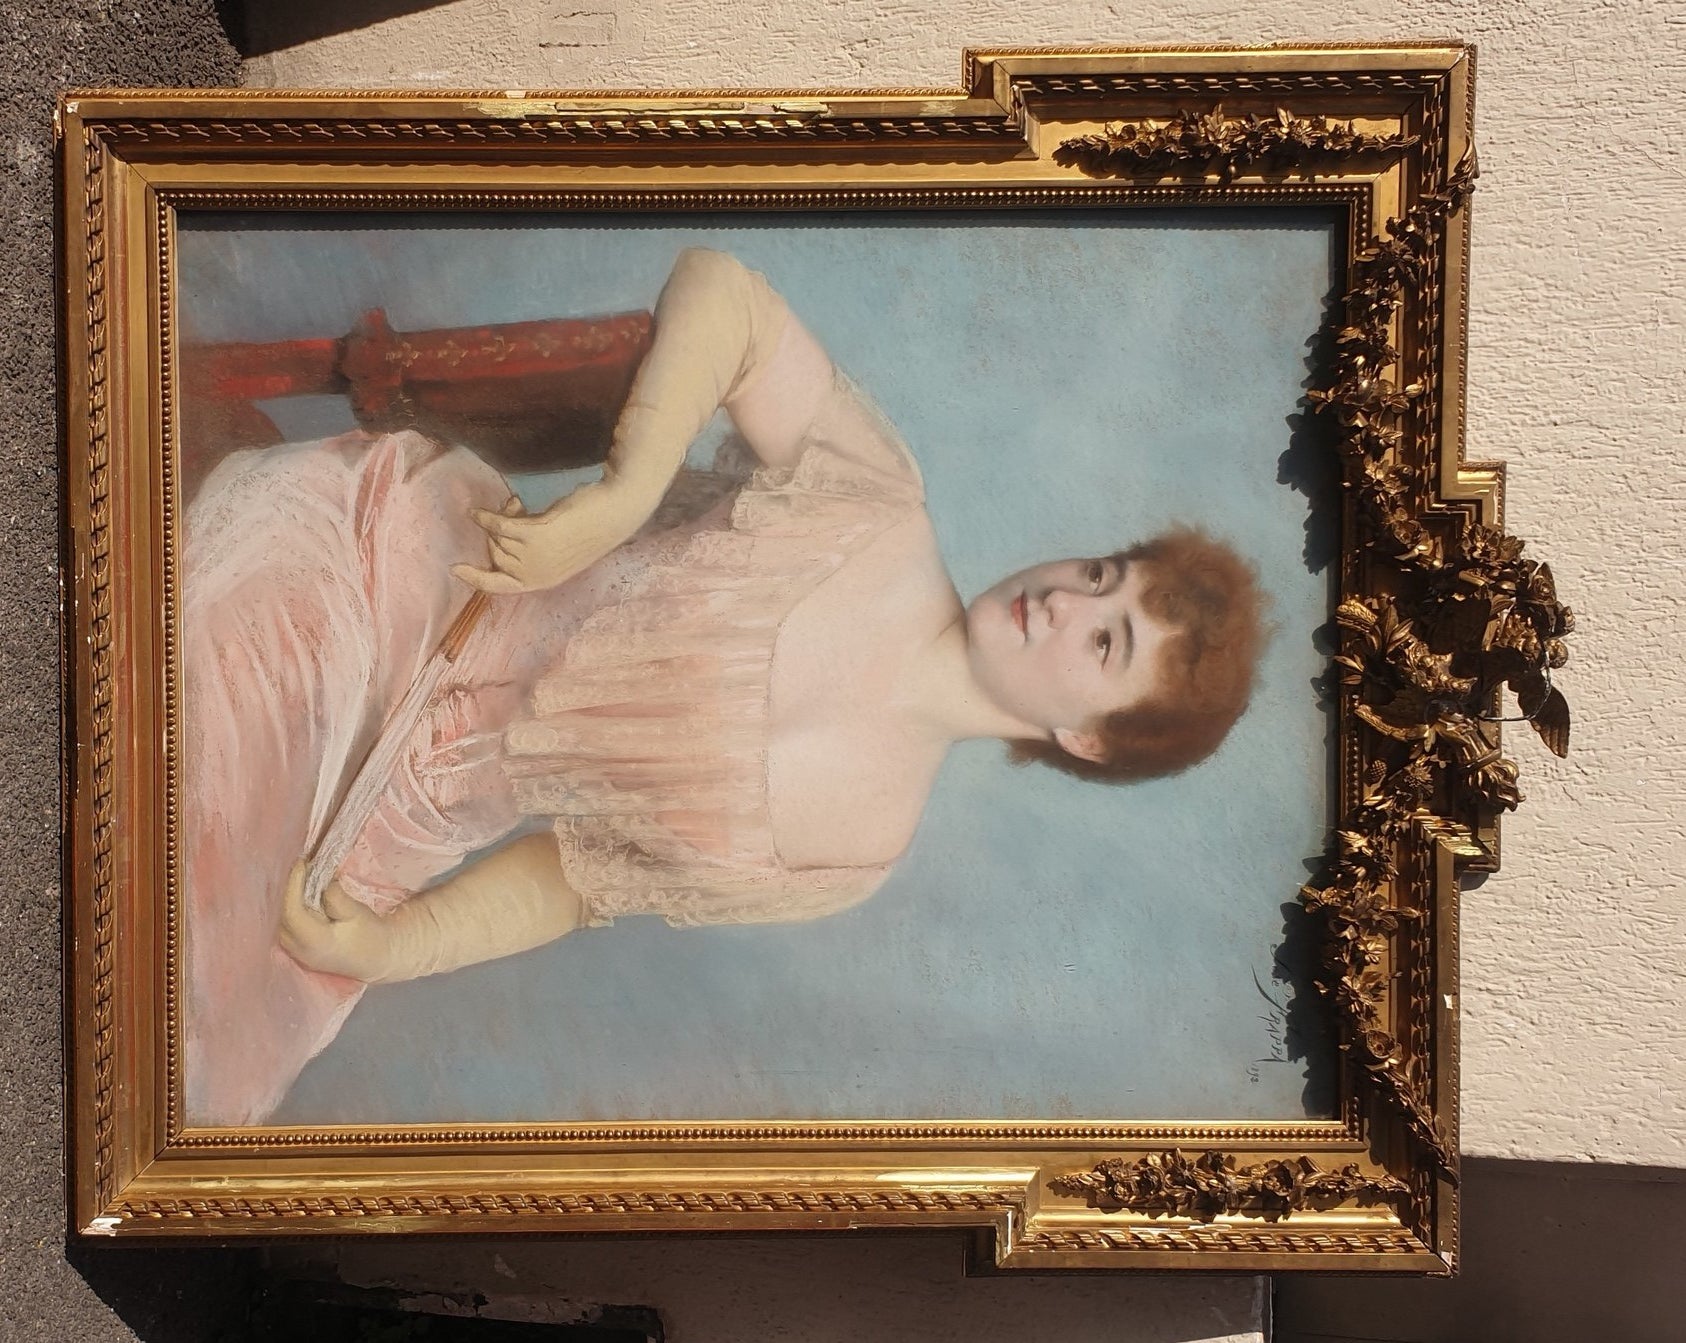 Großes Pastellporträt einer jungen Frau in einem rosa Kleid, sitzend, mit ihrem Fächer, auf blauem Hintergrund

Rahmen aus vergoldetem Stuck (Verluste und Abnutzung) verglast

Pastell signiert José Frappa und datiert 1892

José Frappa (1854-1904)